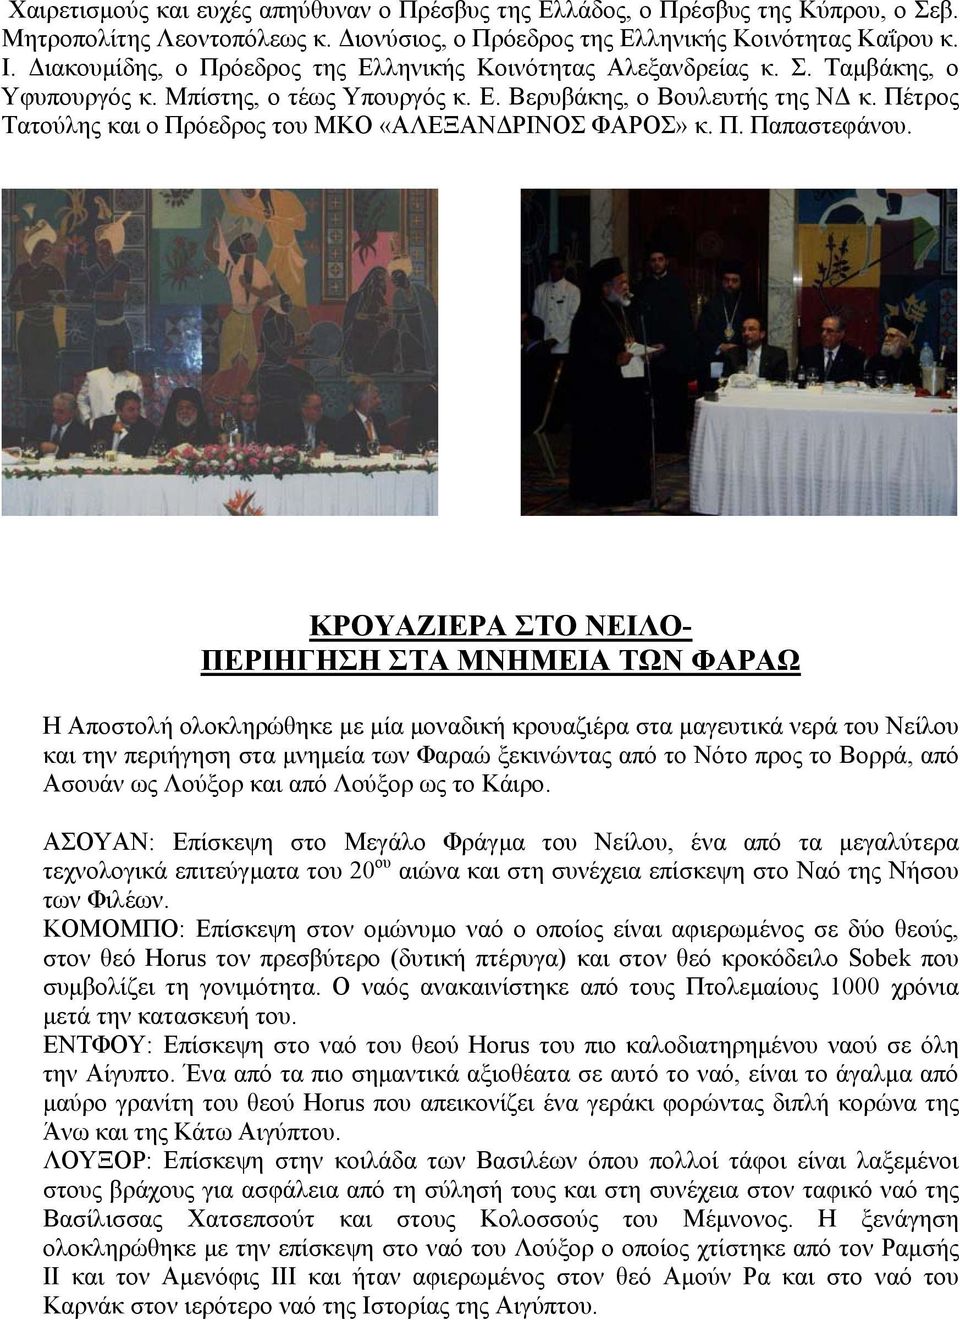 Πέτρος Τατούλης και ο Πρόεδρος του ΜΚΟ «ΑΛΕΞΑΝ ΡΙΝΟΣ ΦΑΡΟΣ» κ. Π. Παπαστεφάνου.